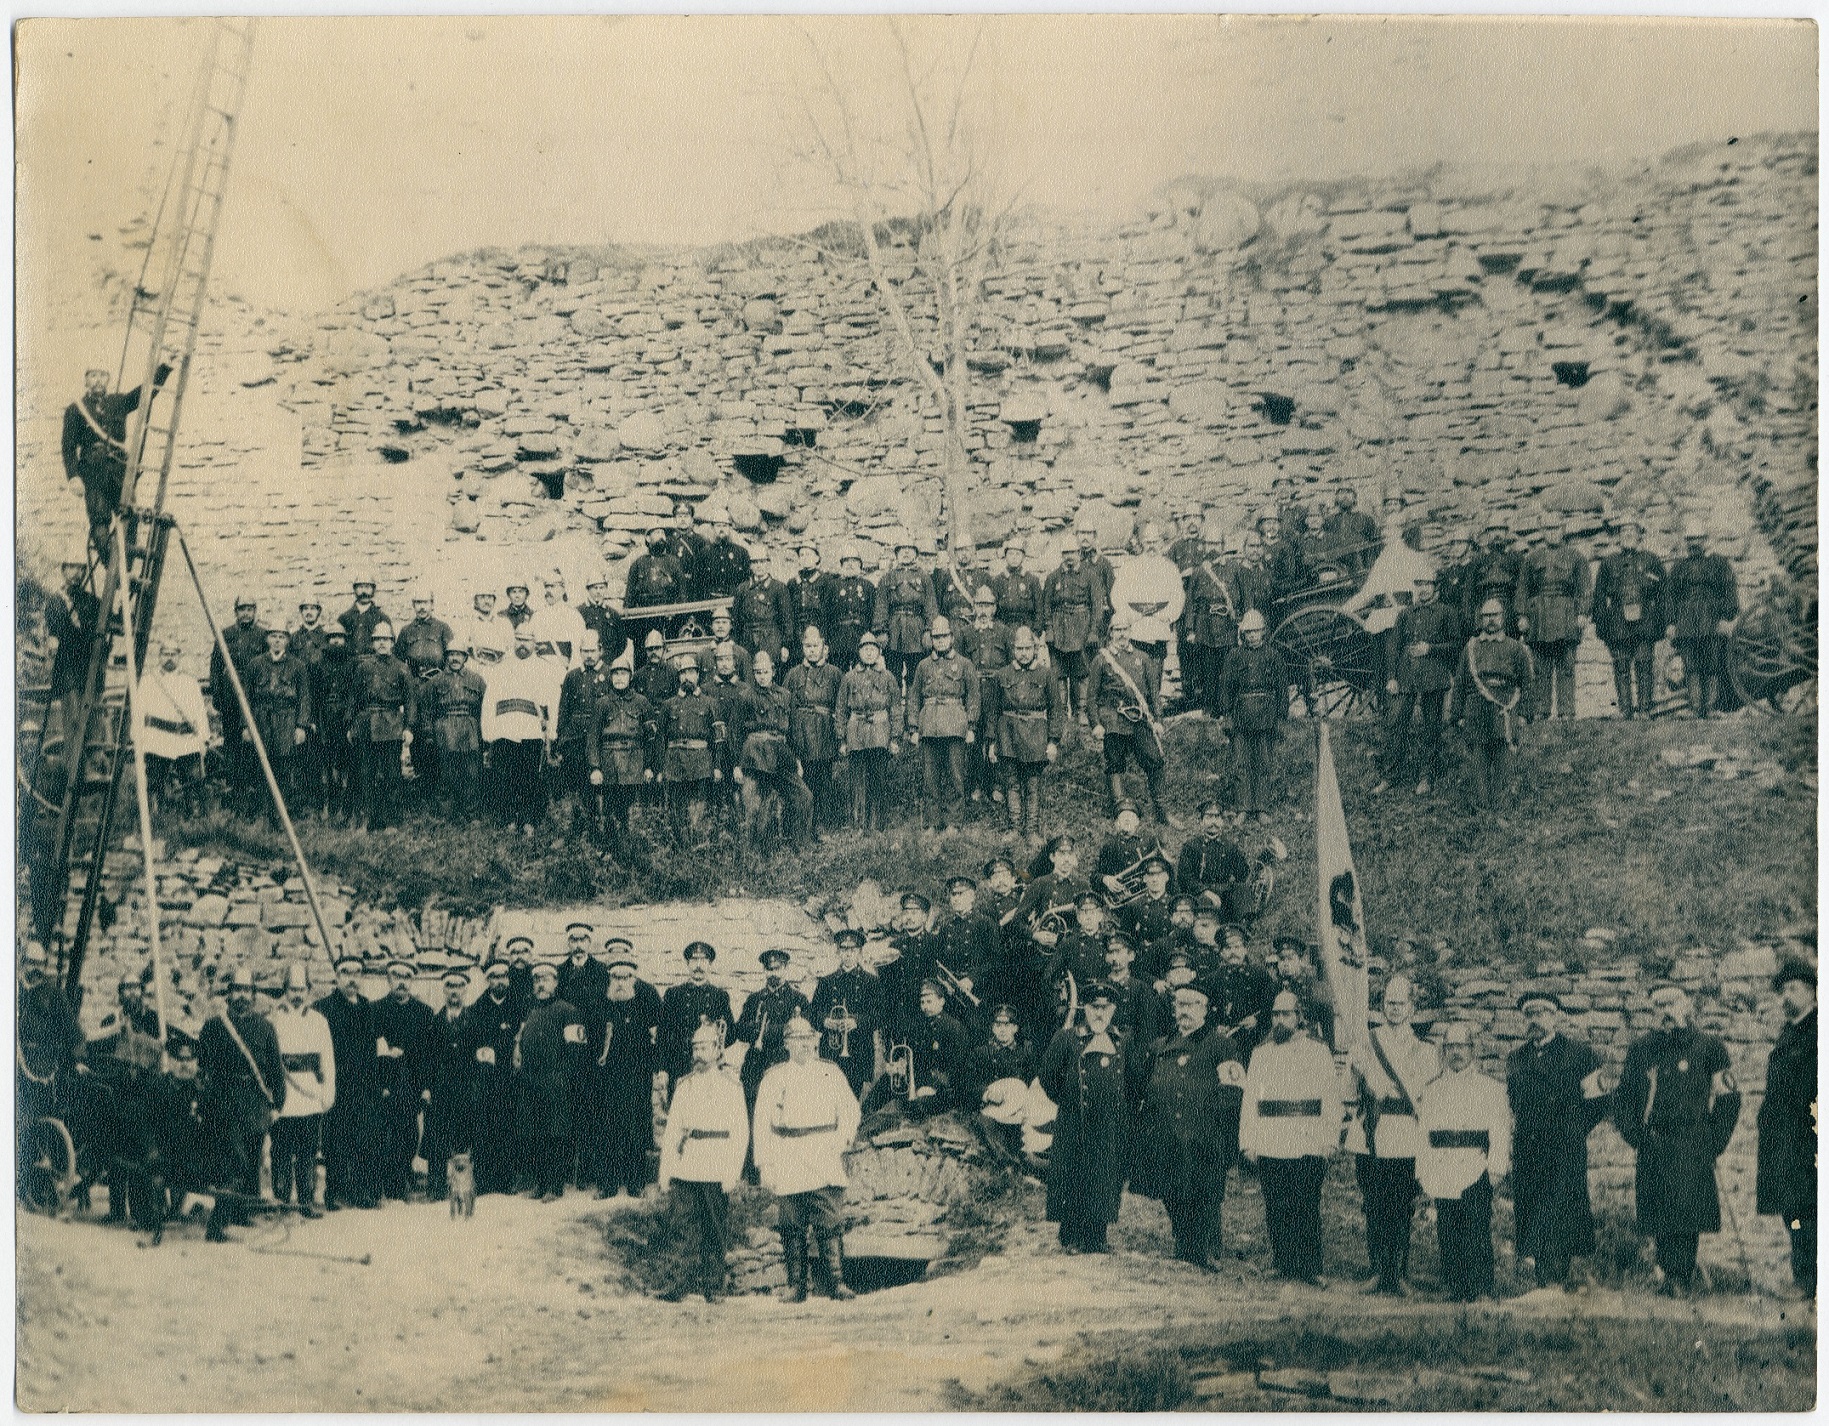 Haapsalu Vabatahtliku Tuletõrje Ühingu liikmed manöövritel ühingu 35. aastapäeval, 1903.a.